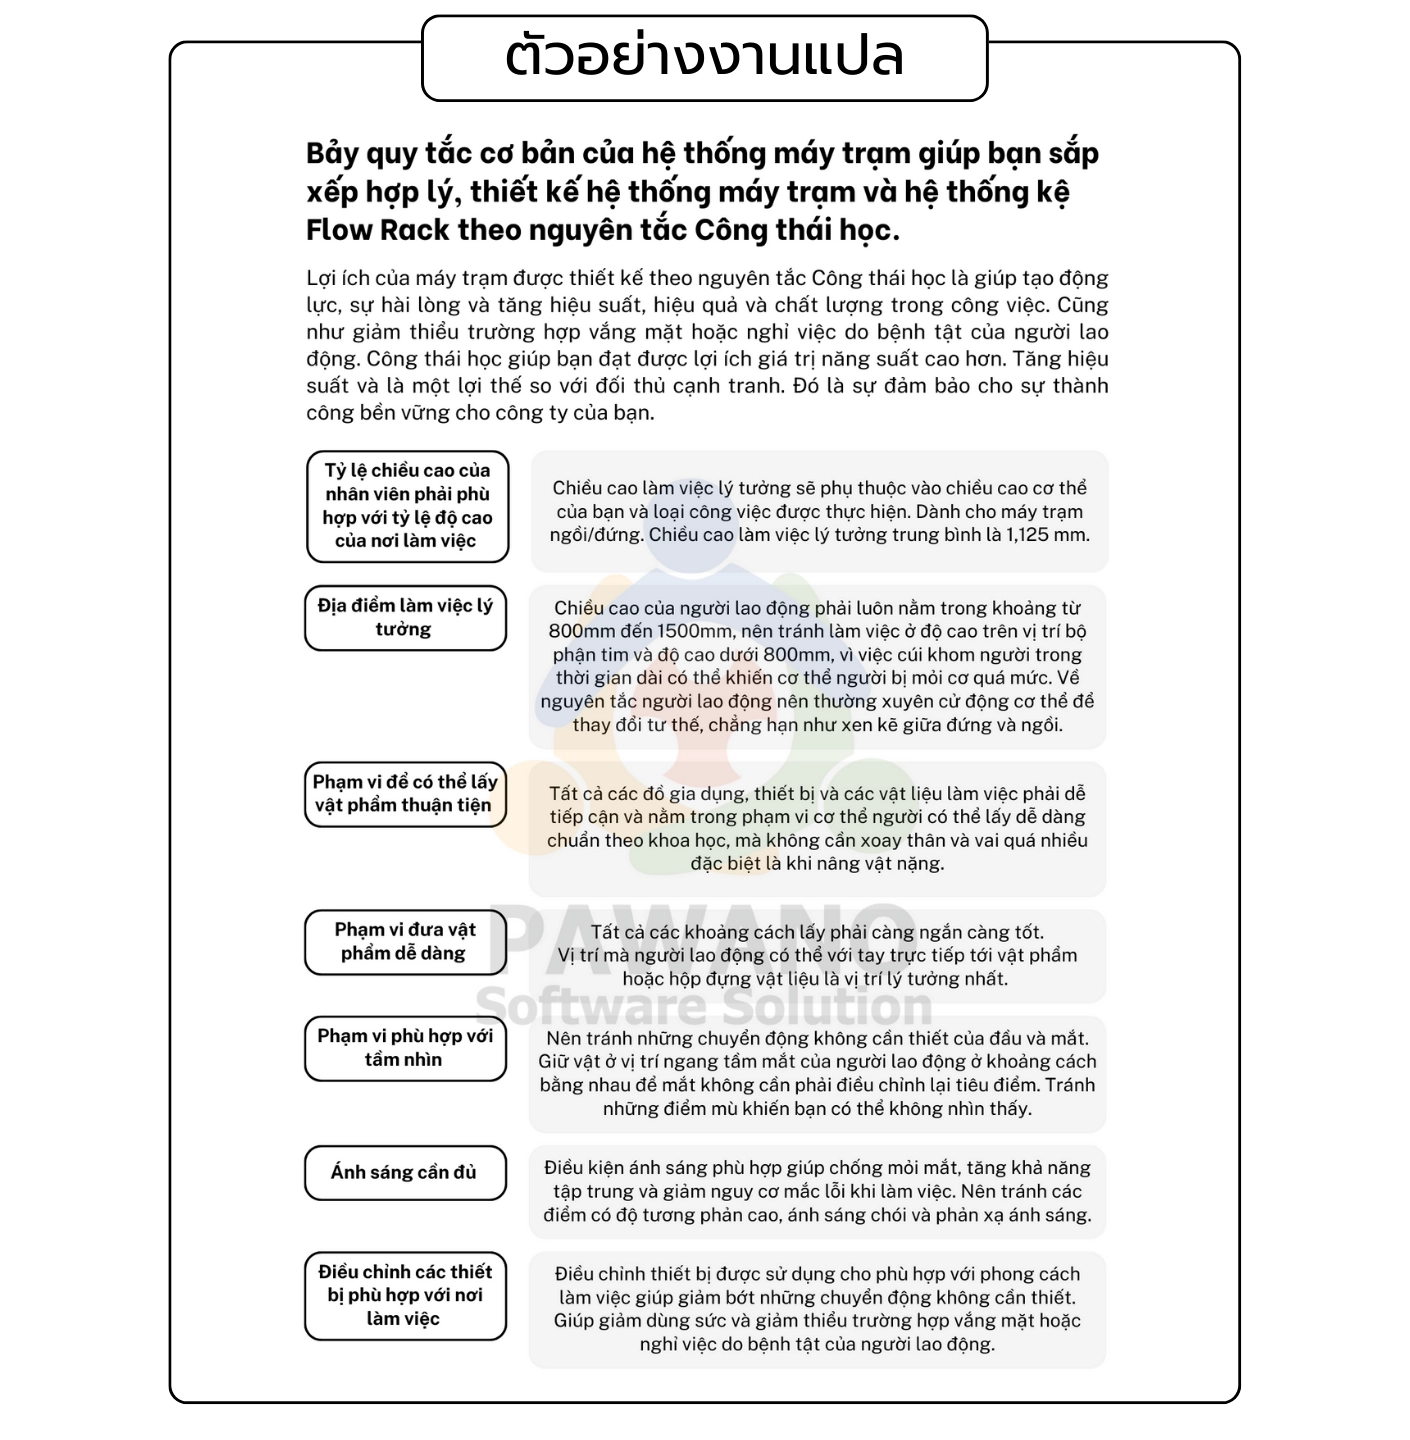 ตัวอย่างงานแปลคู่มือ ภาษาเวียดนาม